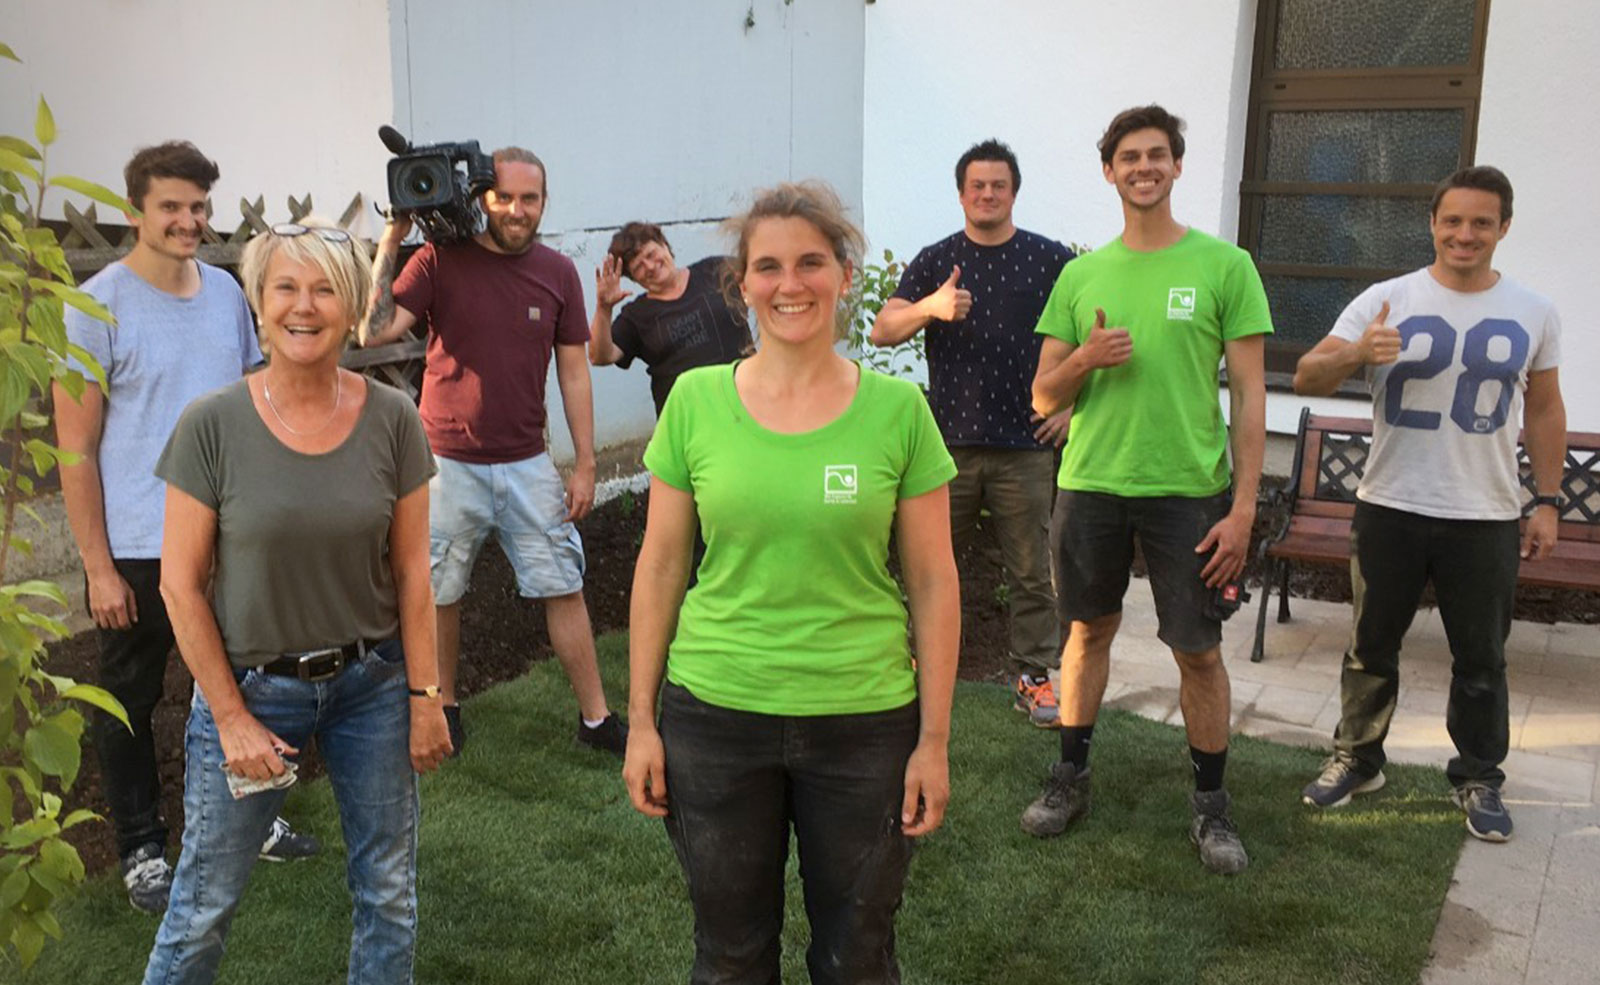 Das Team nach den Dreharbeiten zur SWR-Landesschau-Serie „Die Gartenretter“. Einsatzort: Vorgarten von Familie Beck, Esslingen, Juni 2020